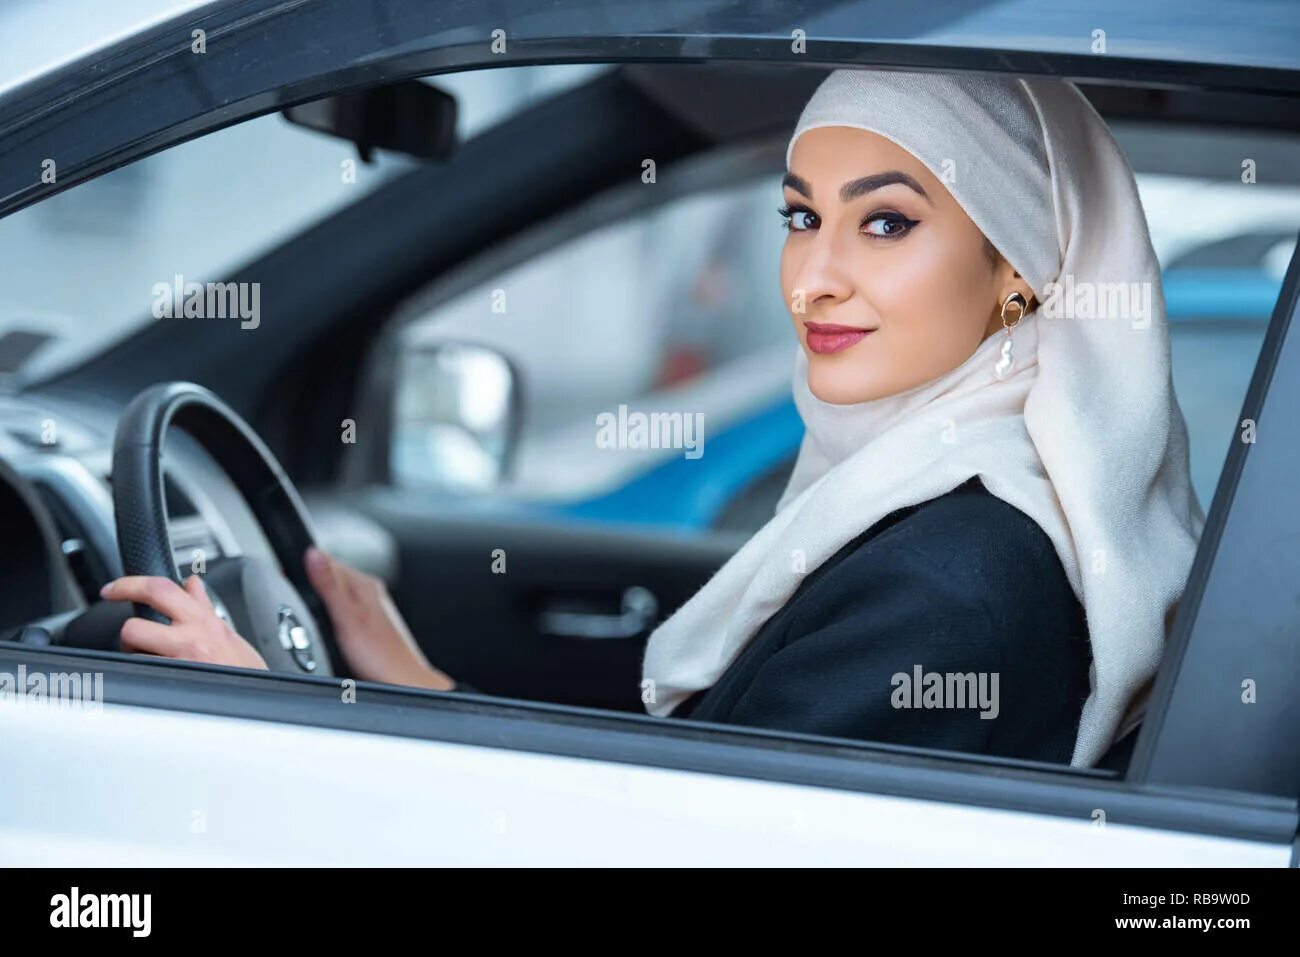 Машина мусульманина. Мусульманка за рулем. Мусульманка водит машину. Девушка мусульманка за рулем. Красивая мусульманка в машине.